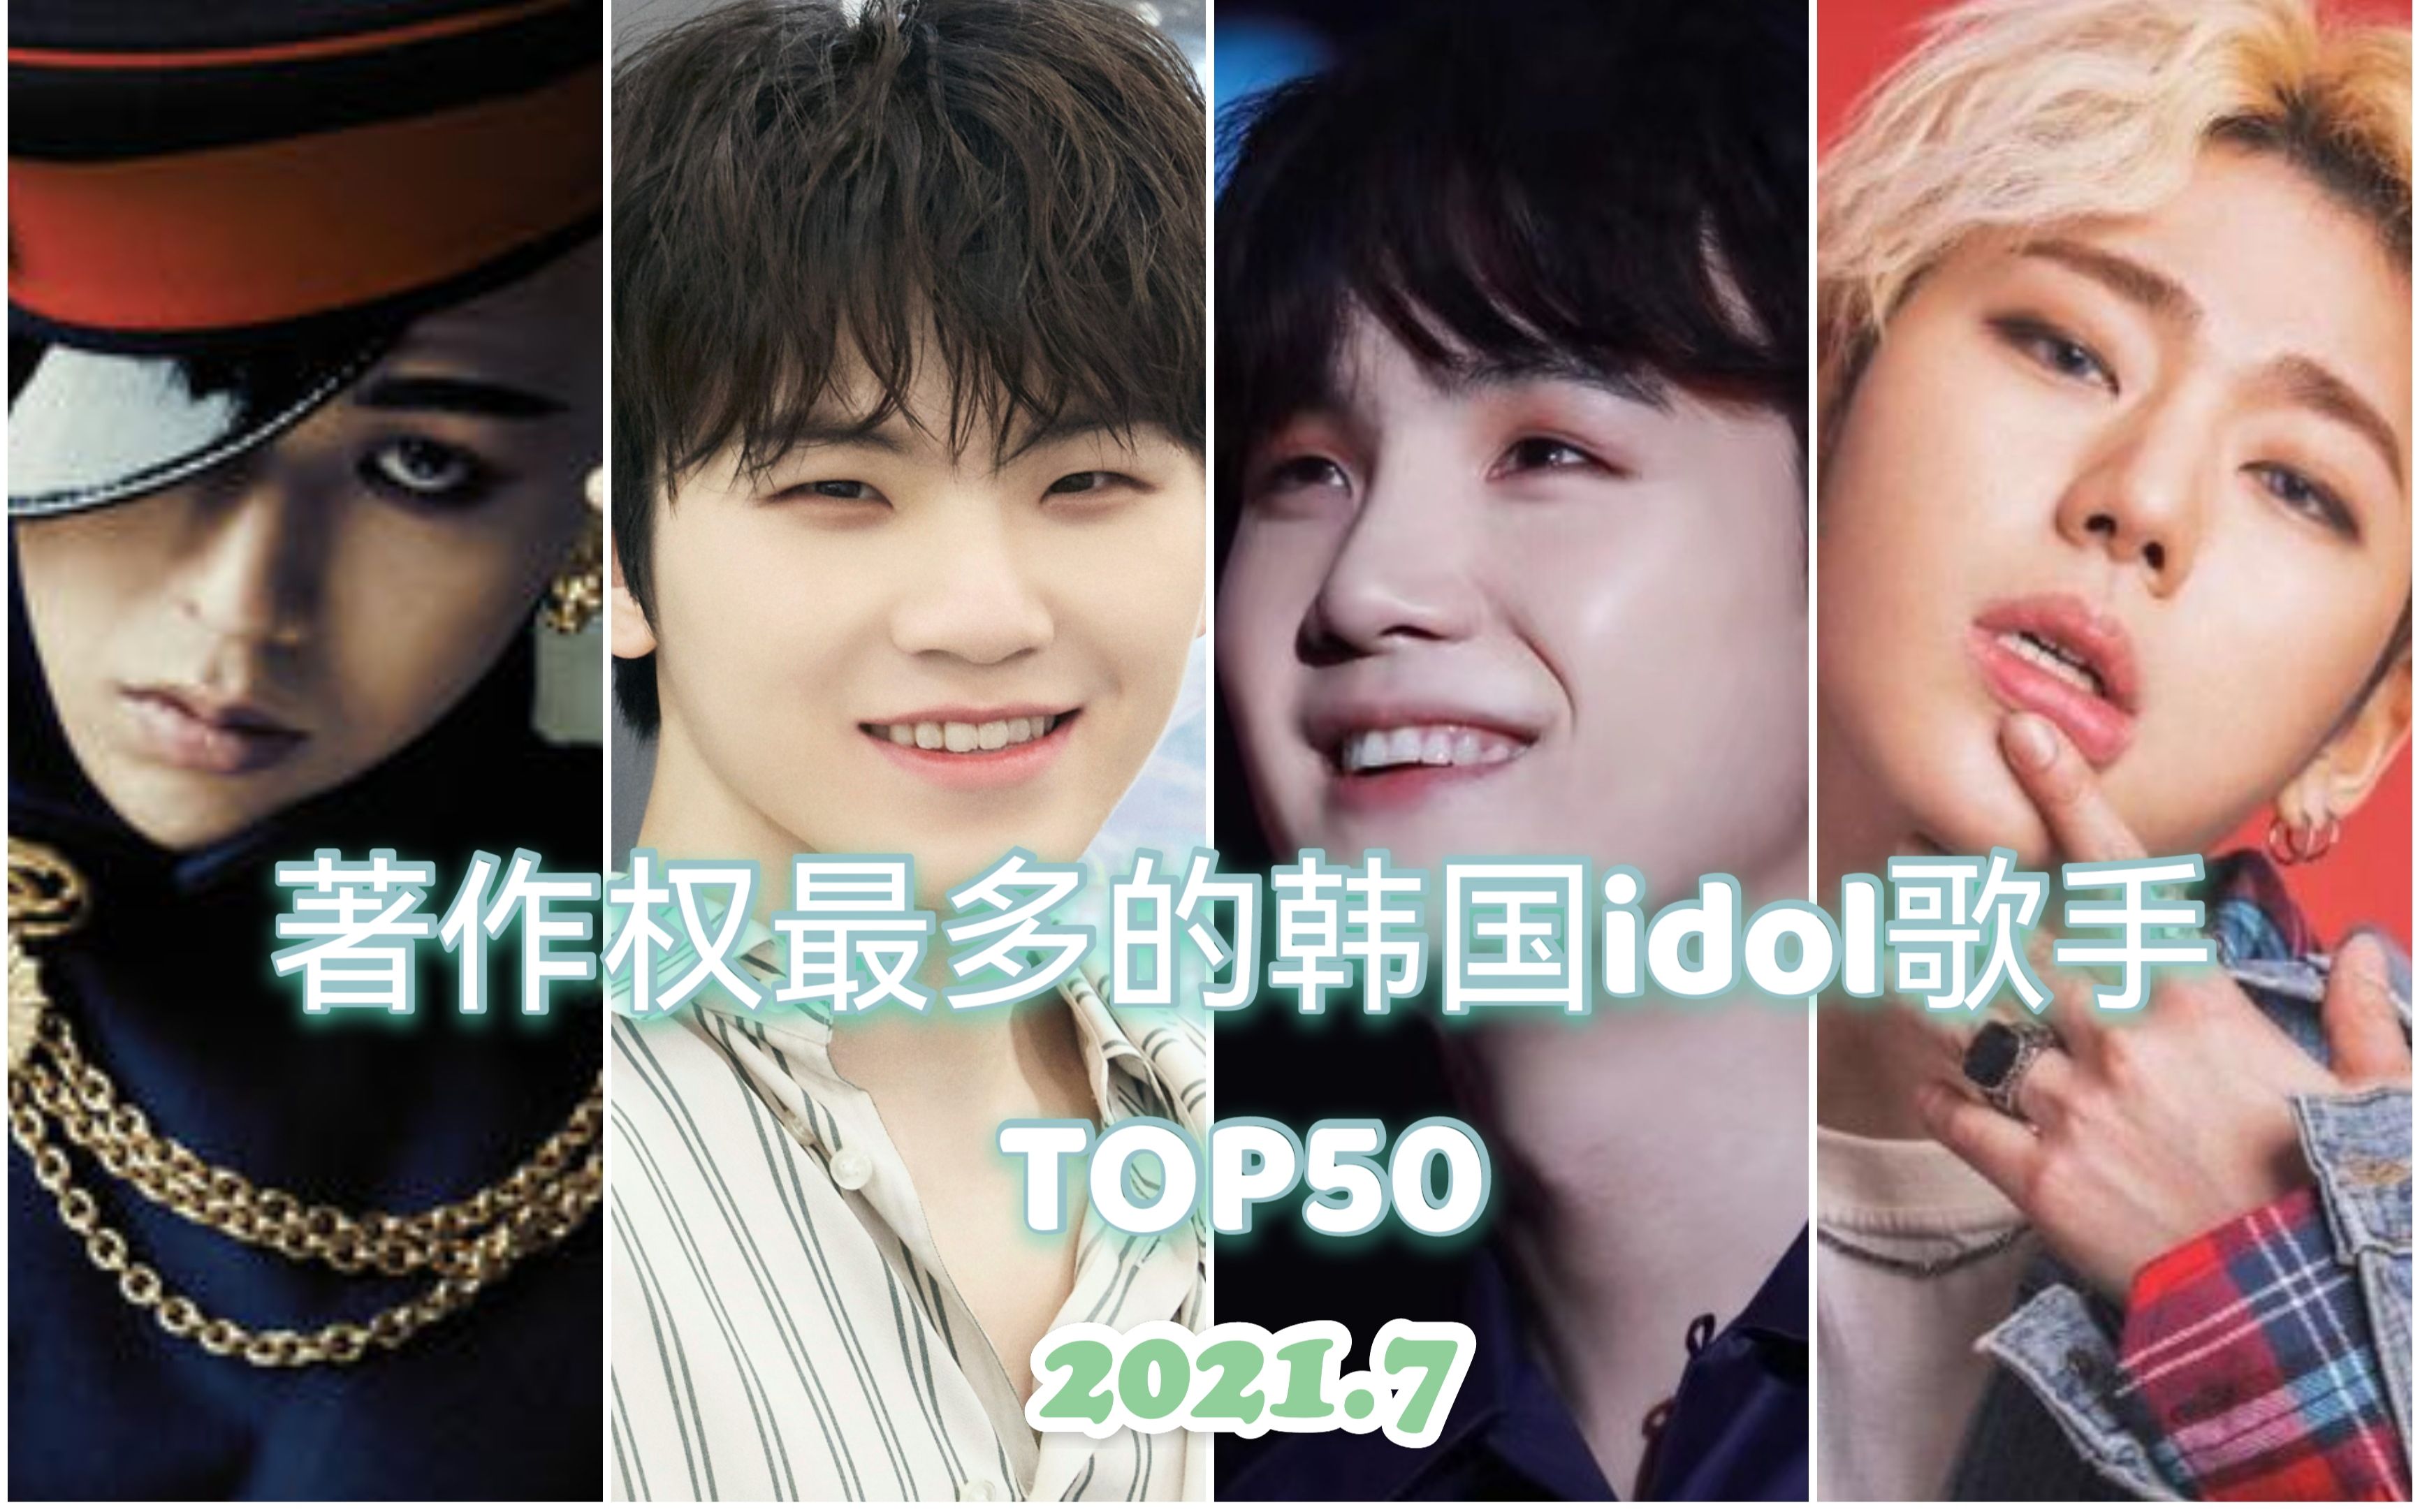 著作权最多的韩国idol歌手TOP50（截至2021.7）